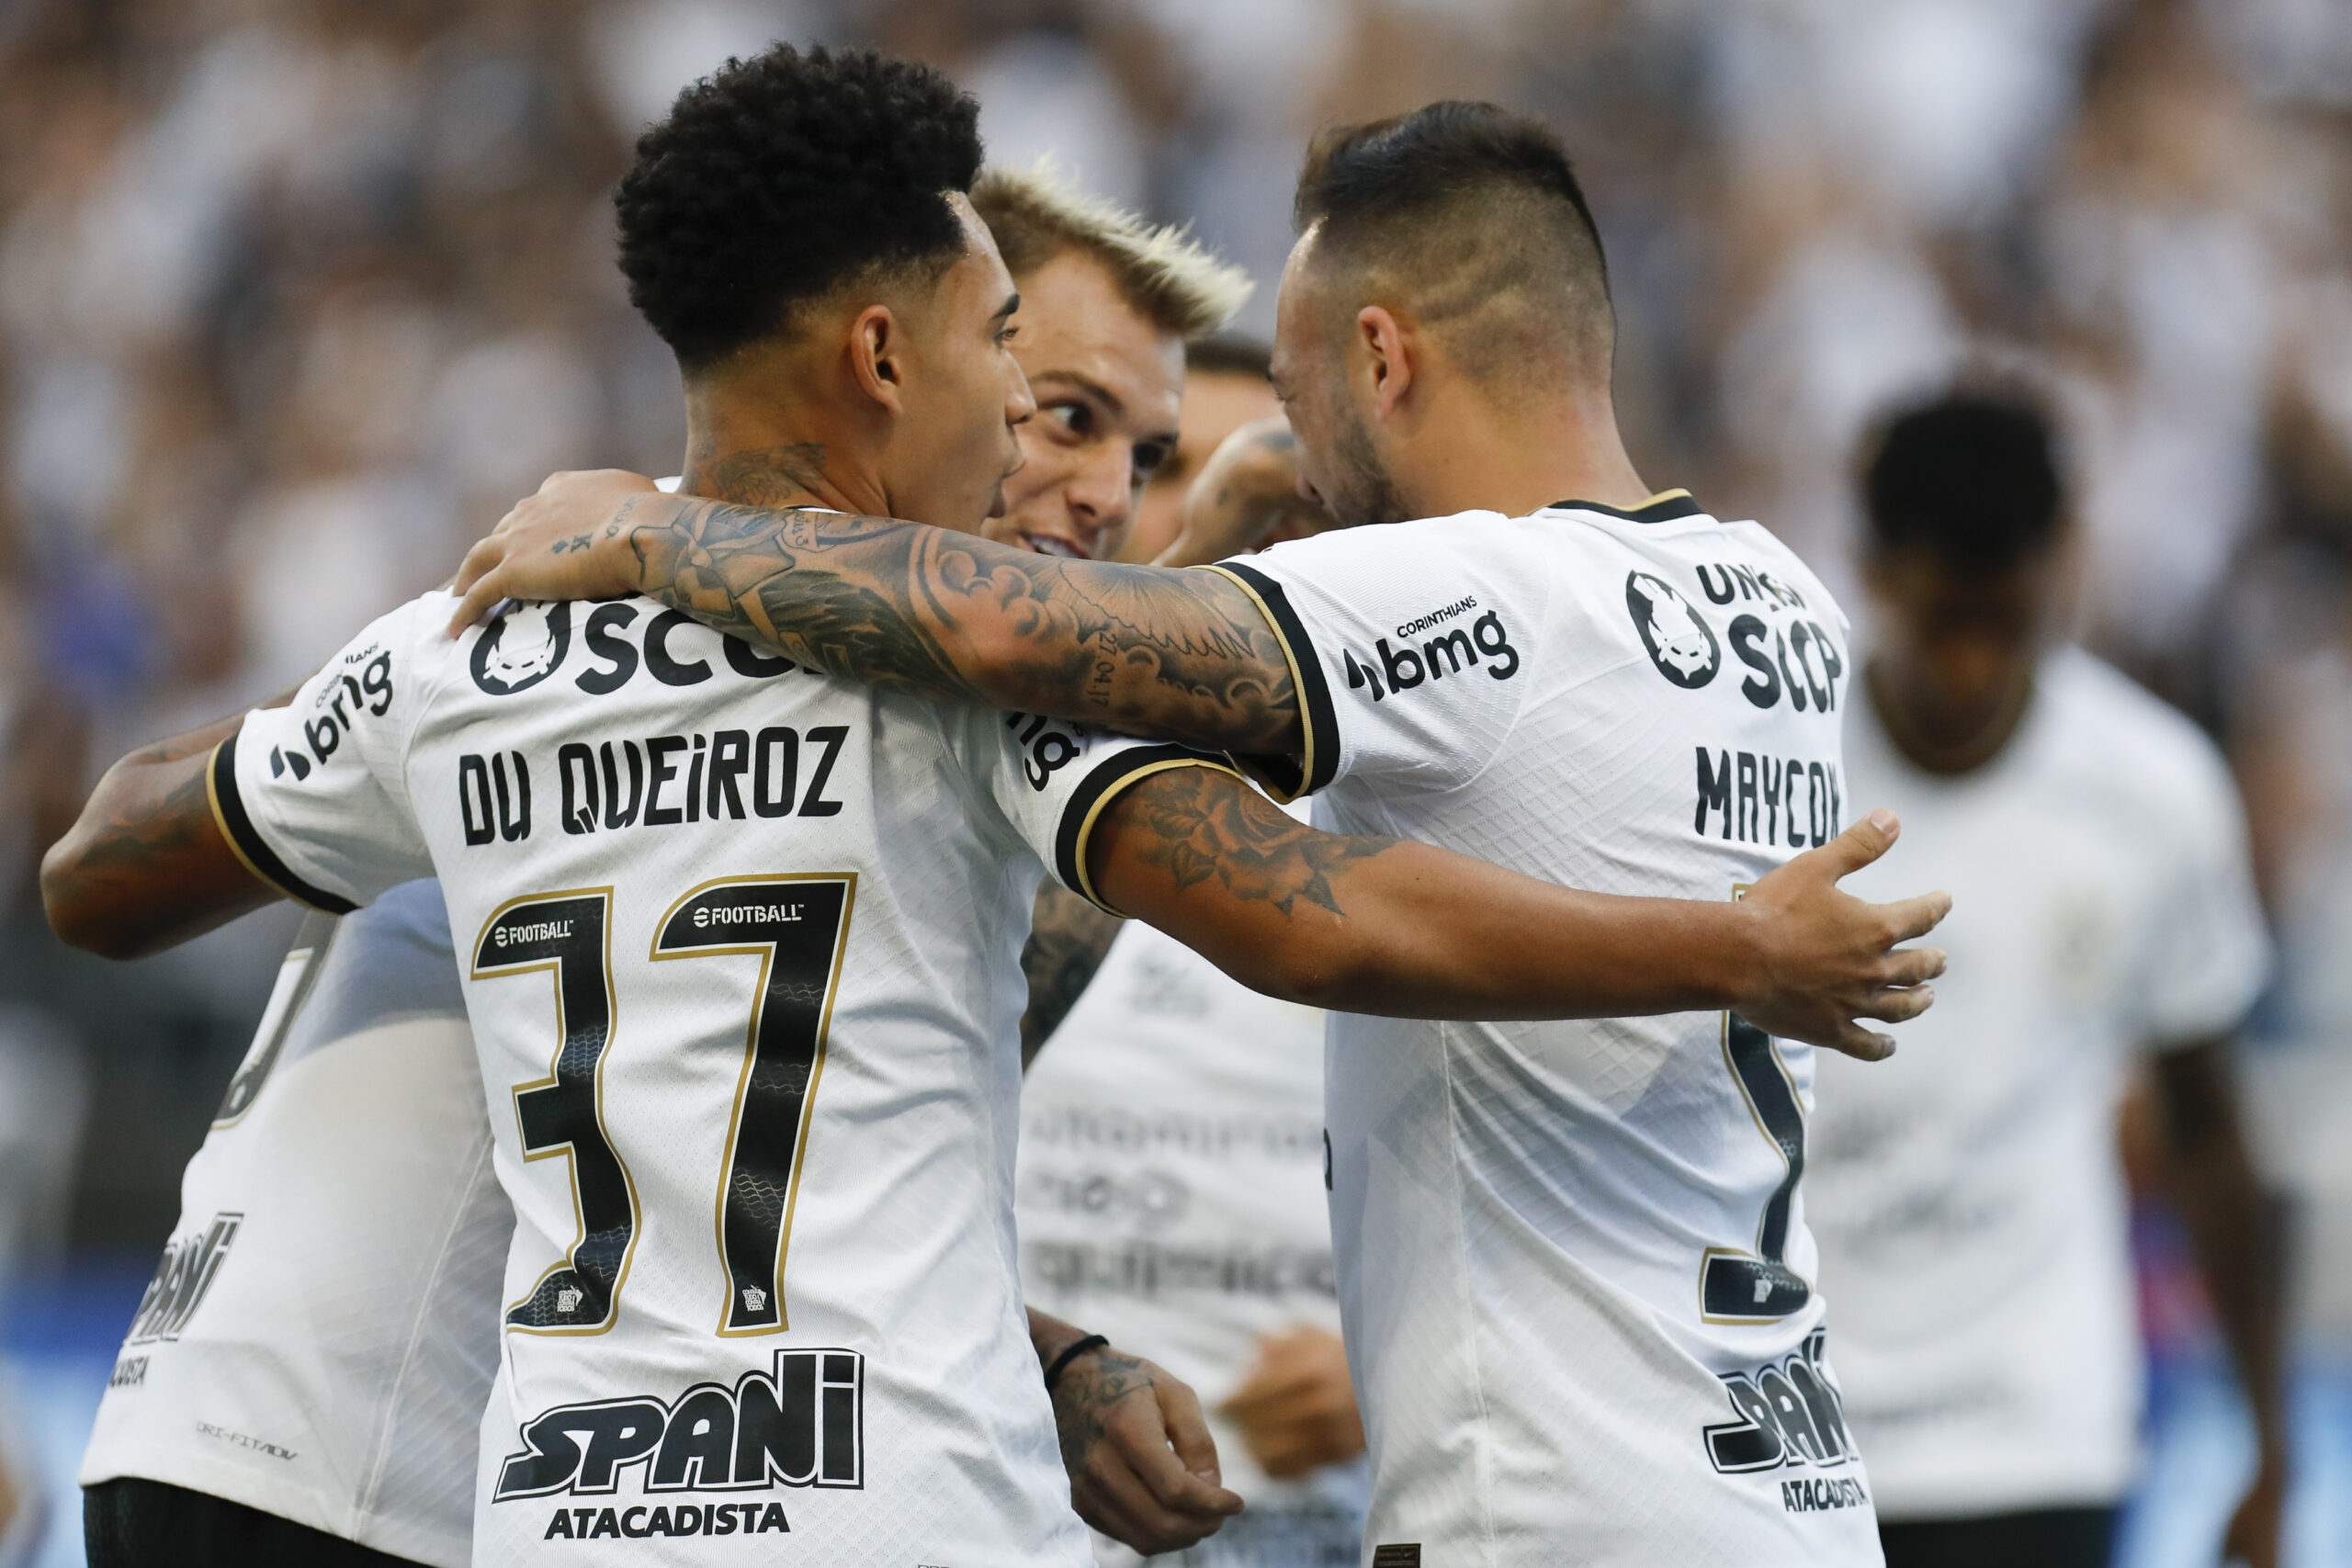 Brasileirão Série A 2022 – Vendas de ingressos: Corinthians x Fortaleza  (1/5) na Neo Química Arena